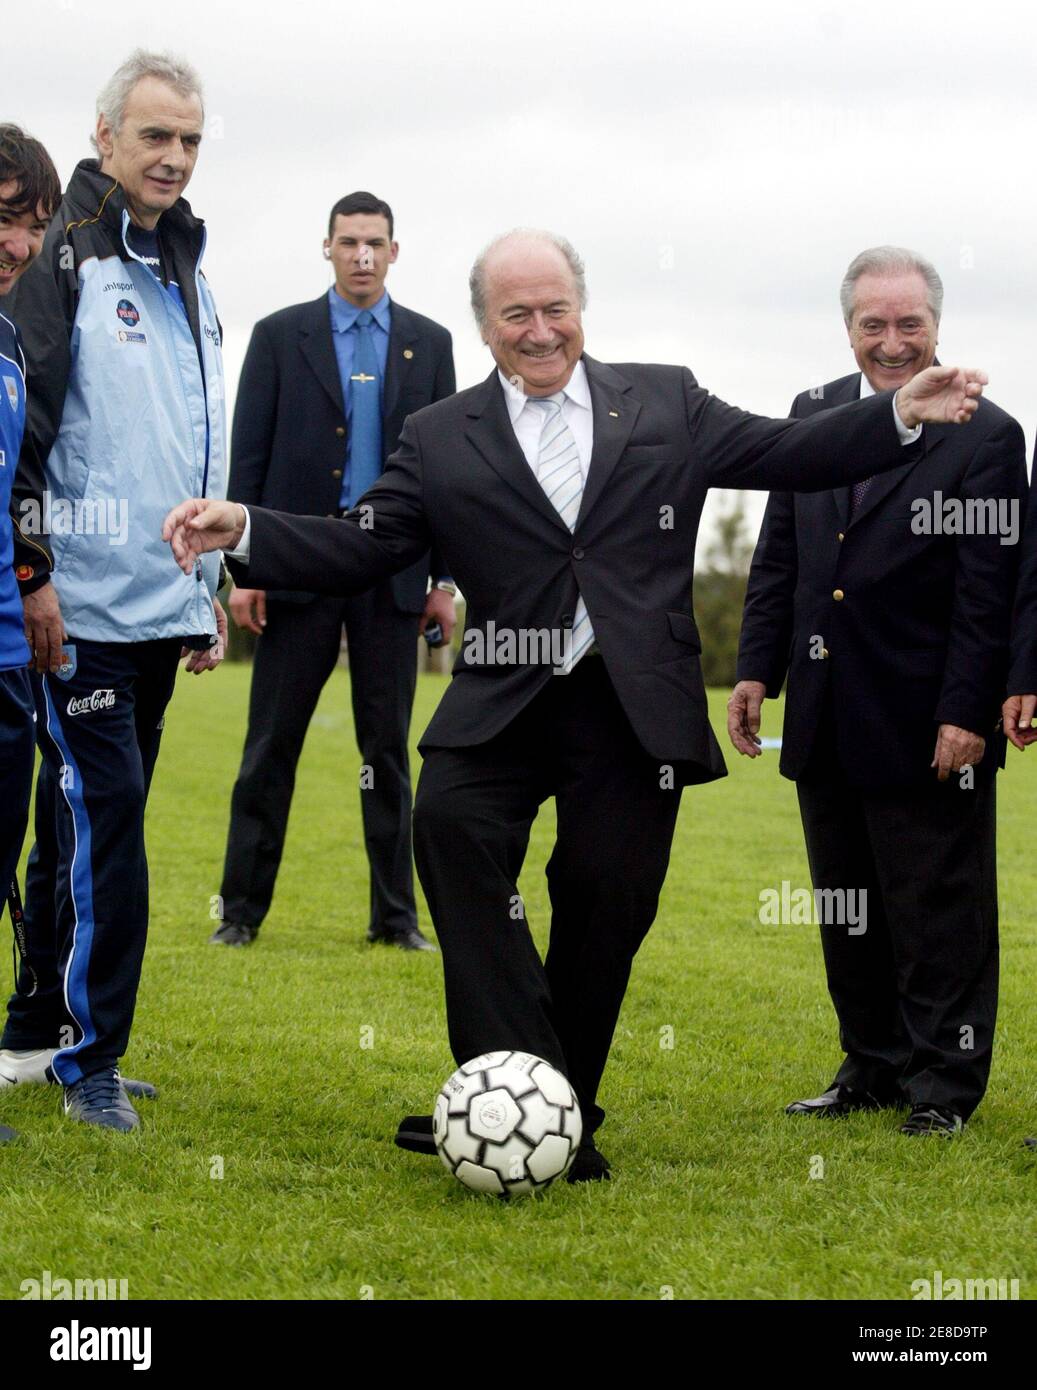 FIFA-Präsident Sepp Blatter (2. R) kickt einen Fußball als Uruguay Trainer  Jorge Fossati (L) und Präsident der uruguayischen Fußball Verein, Eugenio  Figeredo (R), Uhr bei einem Besuch in dem Gebiet, wo die